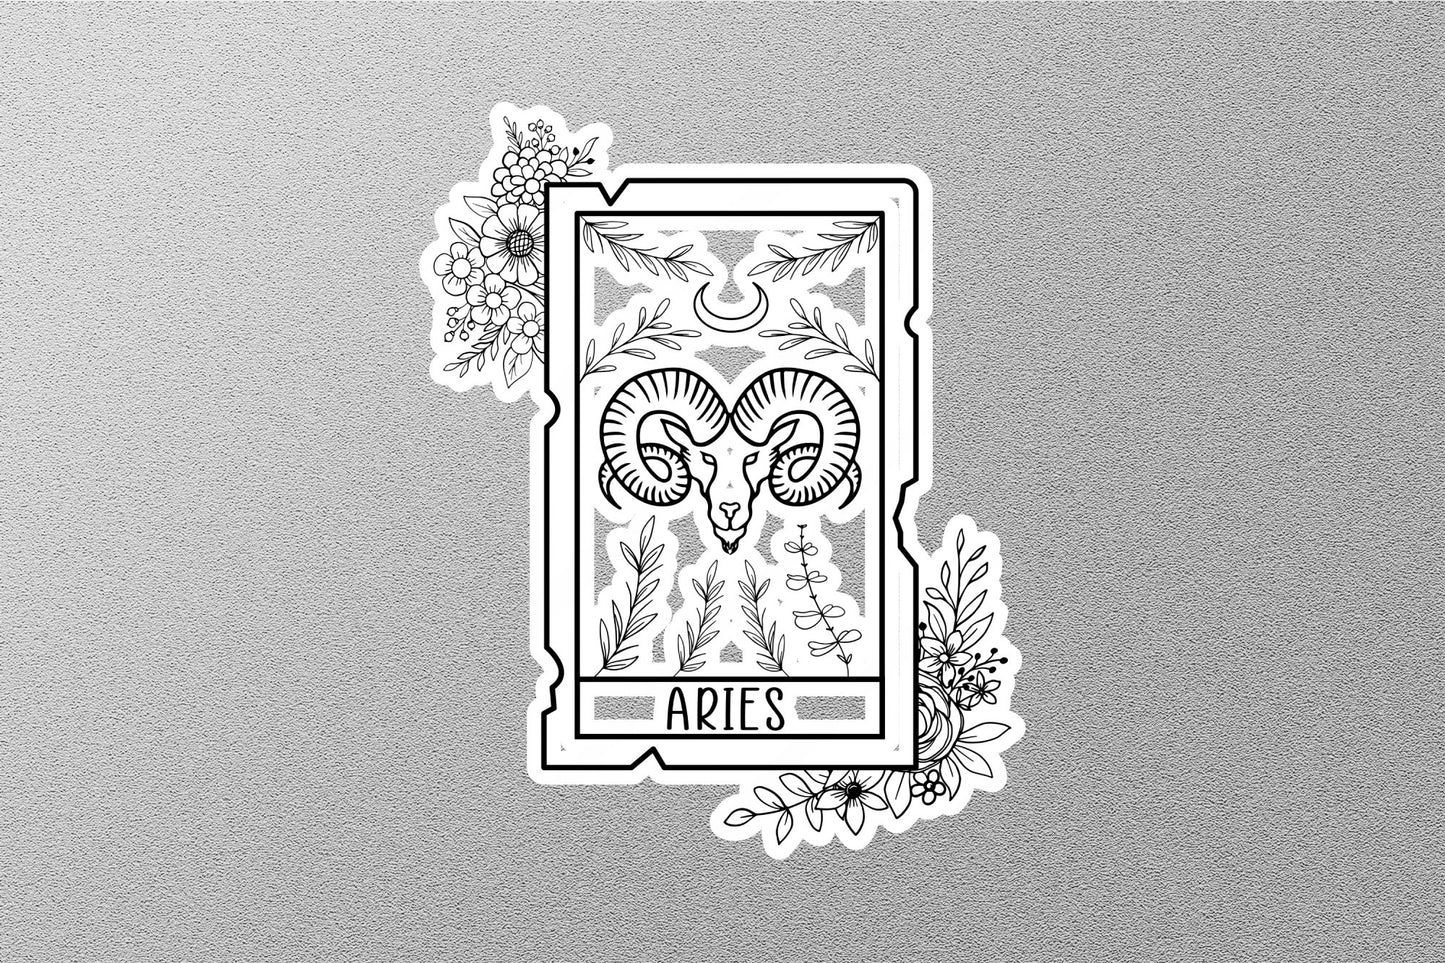 Aries Zodiac Sticker